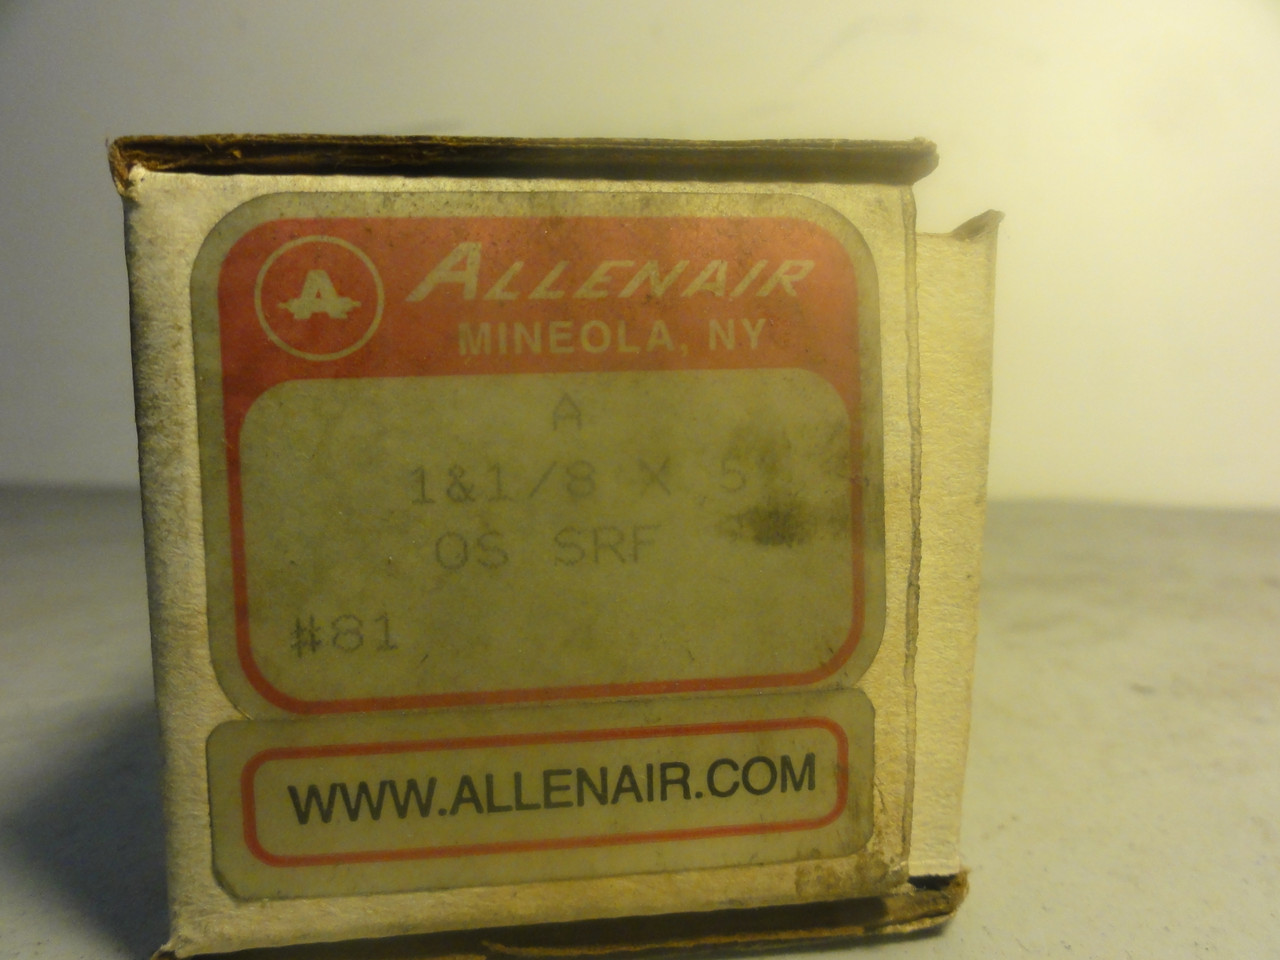 Allenair A 1 & 1/8 X 5 OS SRF Pneumatic Cylinder- New (Open Box)